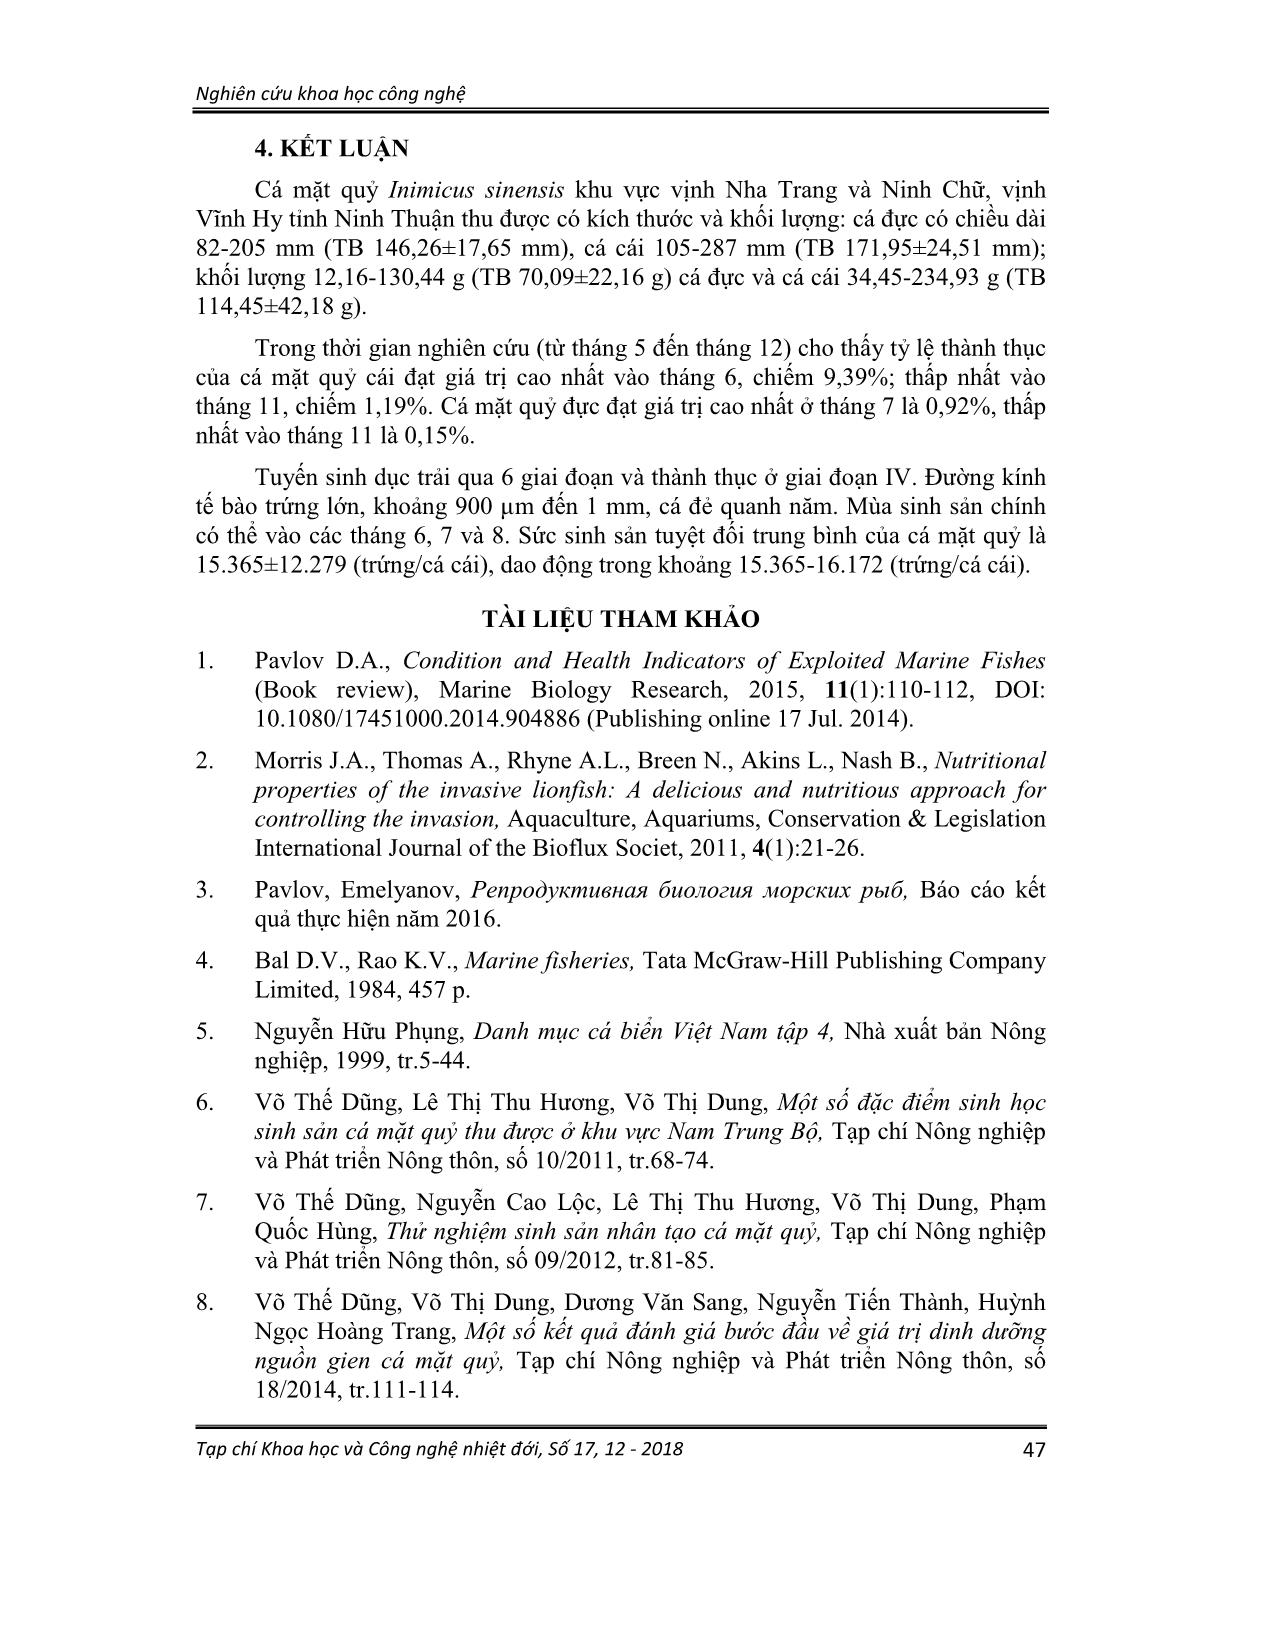 Một số đặc điểm sinh học, sinh sản cá mặt quỷ (inimicus sinensis, valenciennes 1833) thu được ở Khánh hòa và Ninh Thuận trang 9